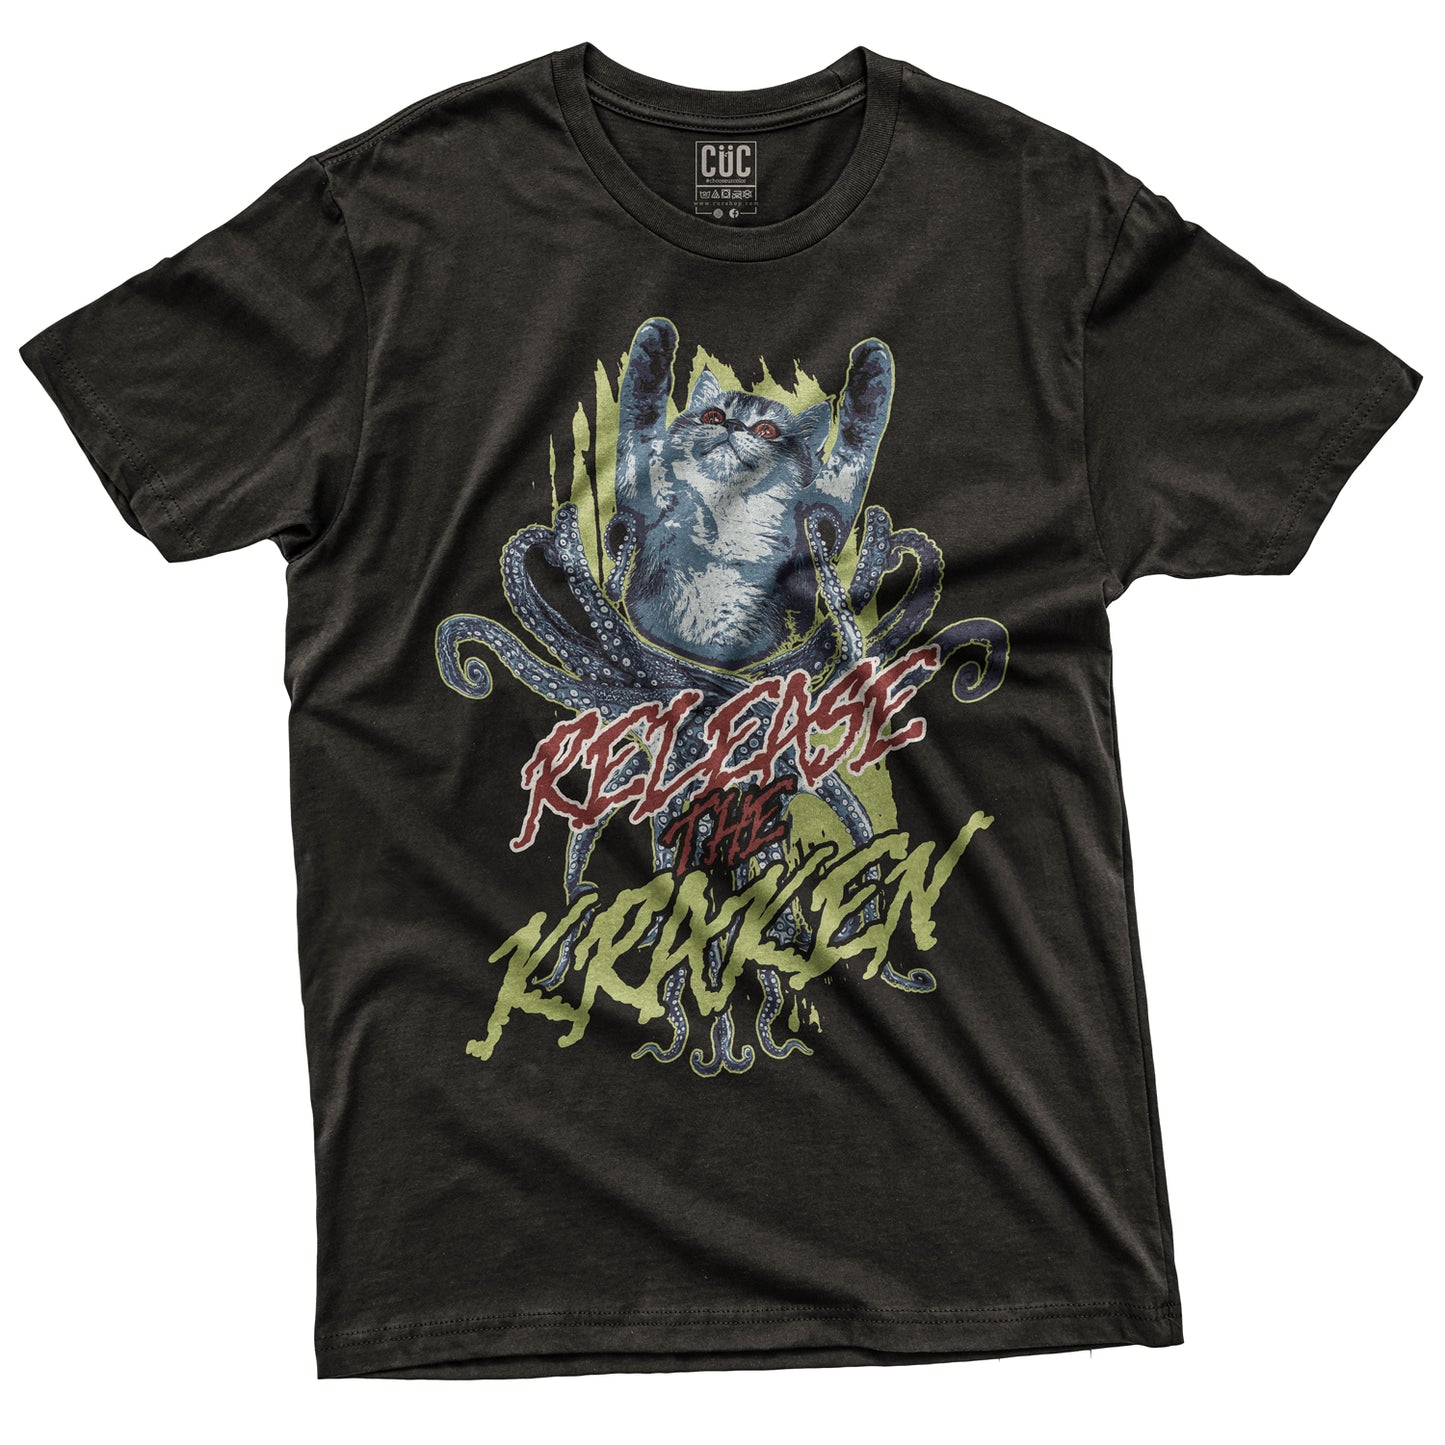 CUC T-Shirt KRAKEN CAT - Release The Kraken - #chooseurcolor